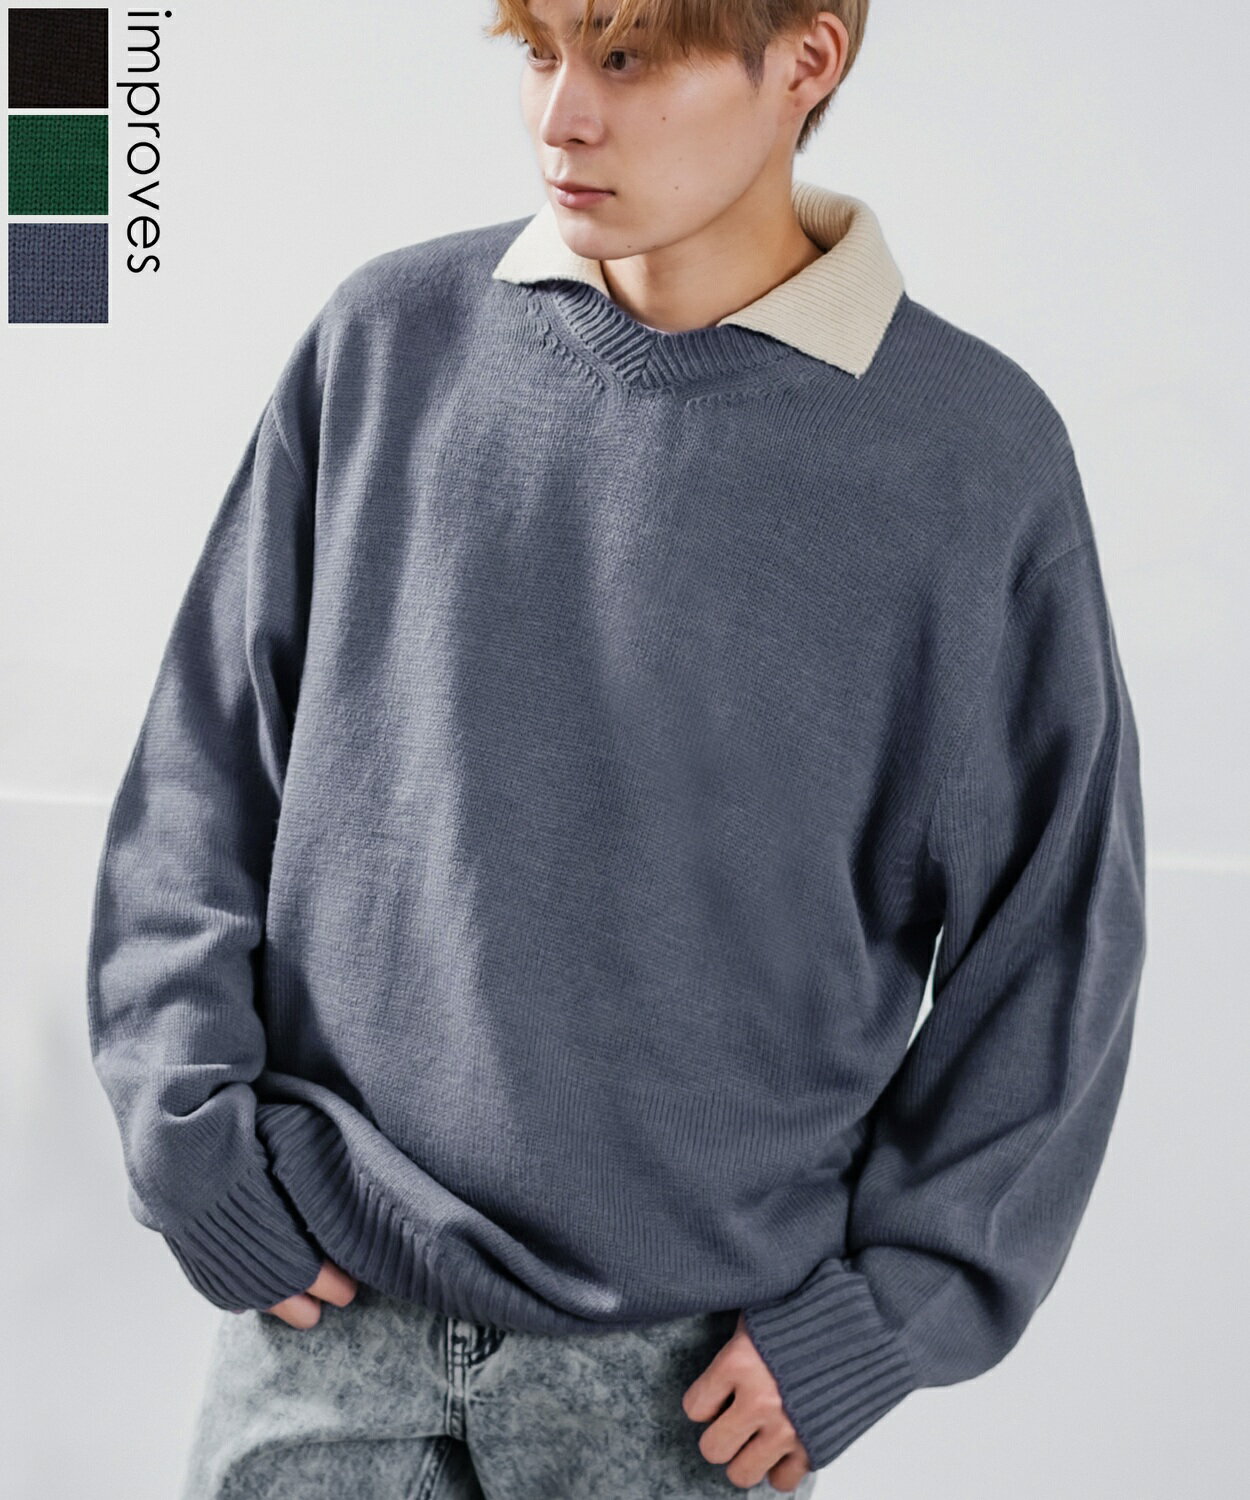 楽天improvesセーター メンズ レディース 襟付きニット レイヤード オーバーサイズ ビッグサイズ ゆったり 大きいサイズ カジュアル ストリート 韓国ファッション グリーン ブラック ネイビー